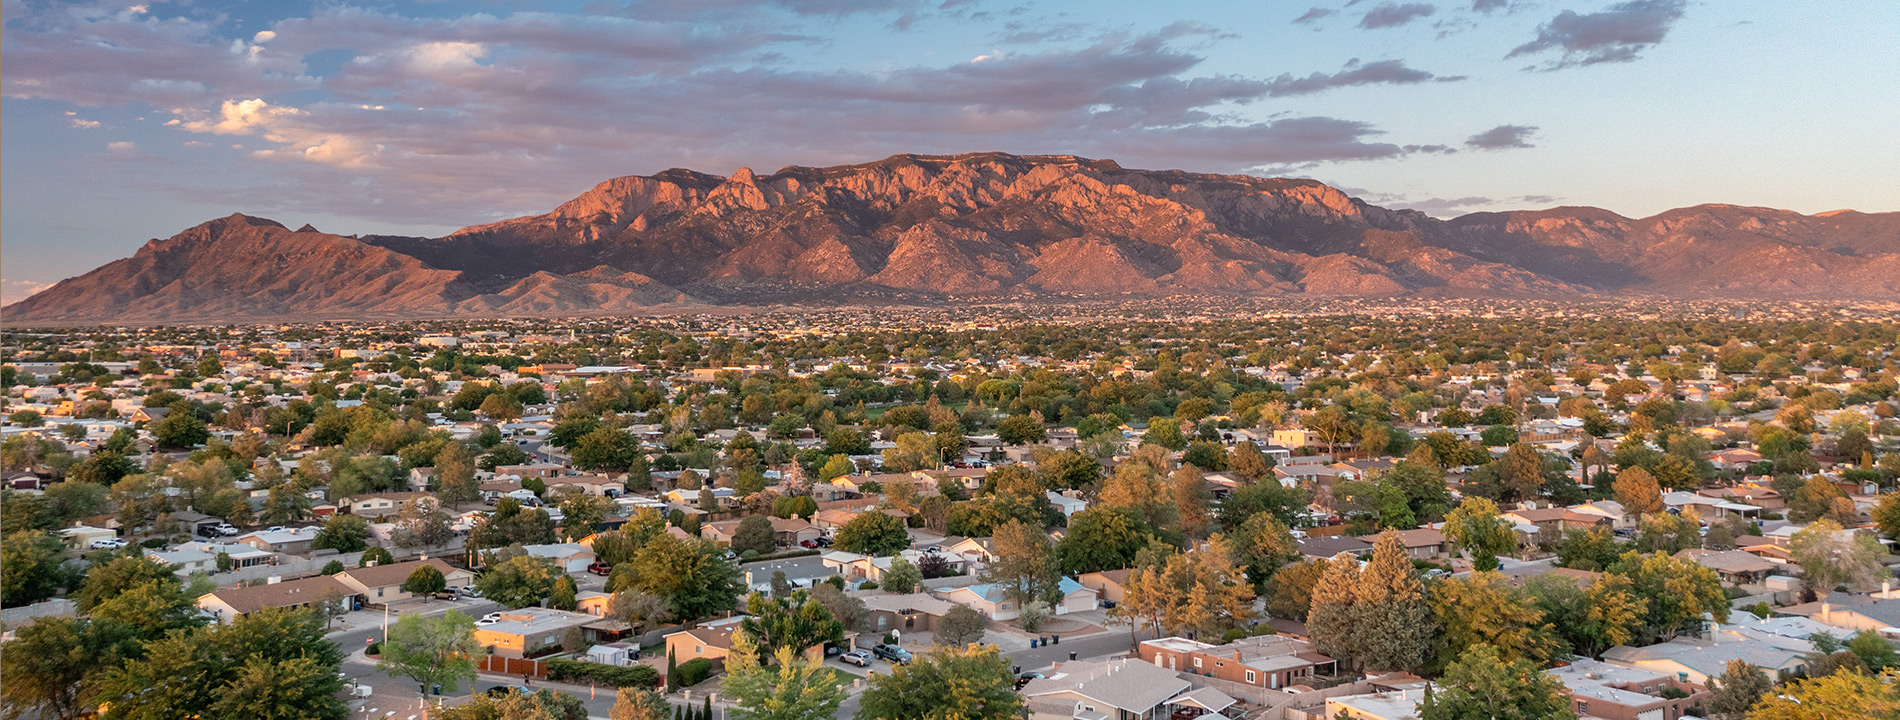 Mountains in New Mexico, Albuquerque.